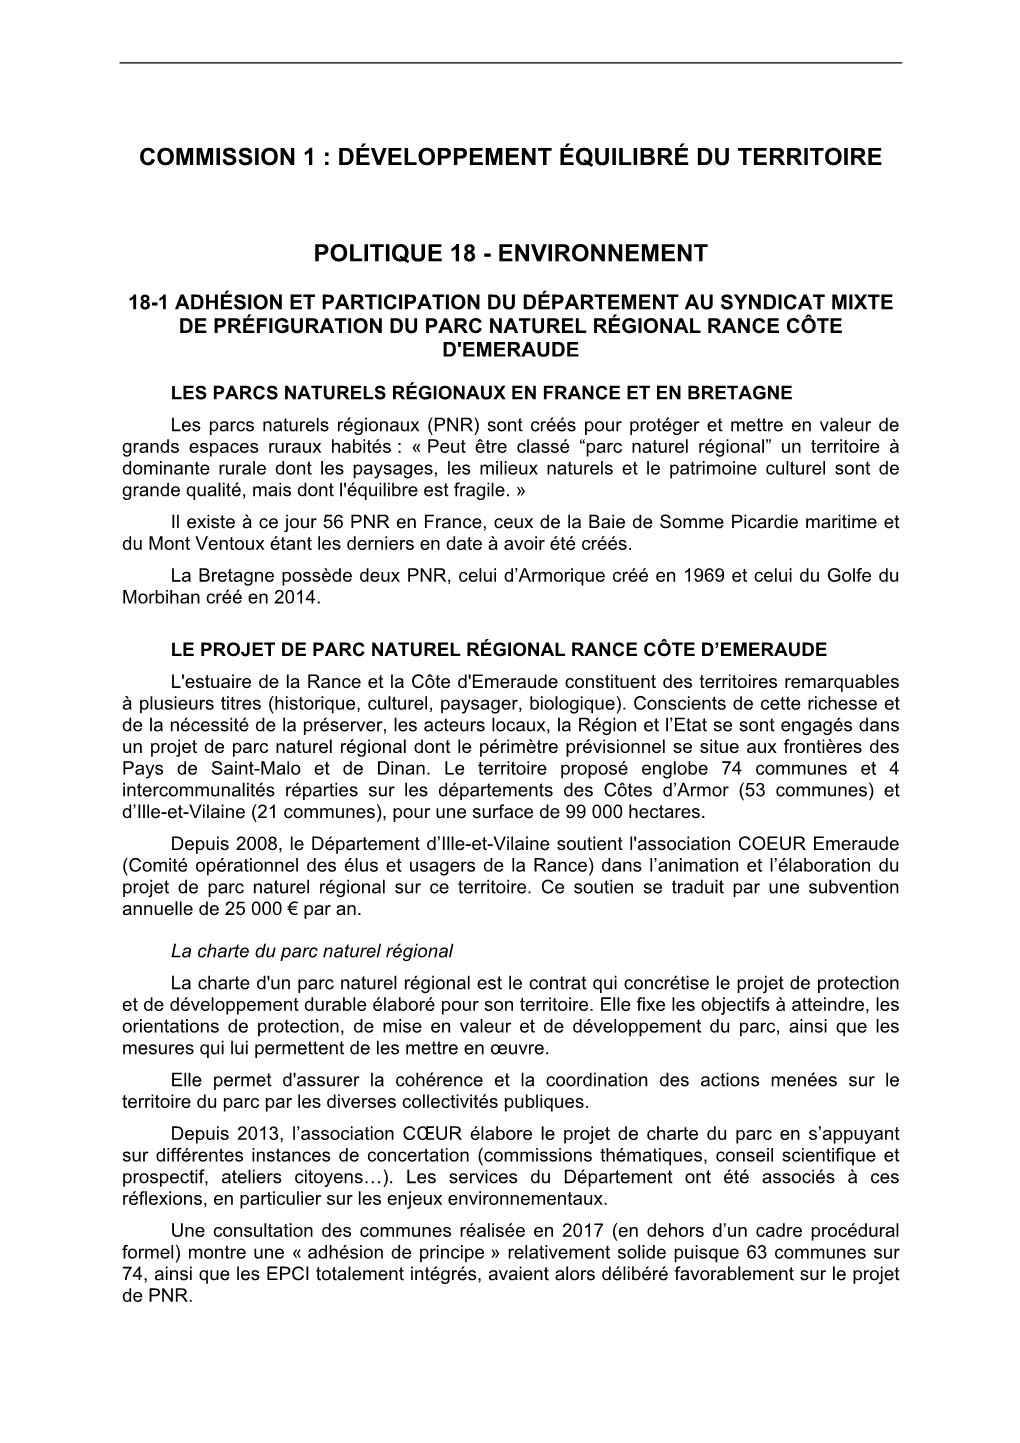 18-1 Adhésion Et Participation Du Département Au Syndicat Mixte De Préfiguration Du Parc Naturel Régional Rance Côte D'emeraude